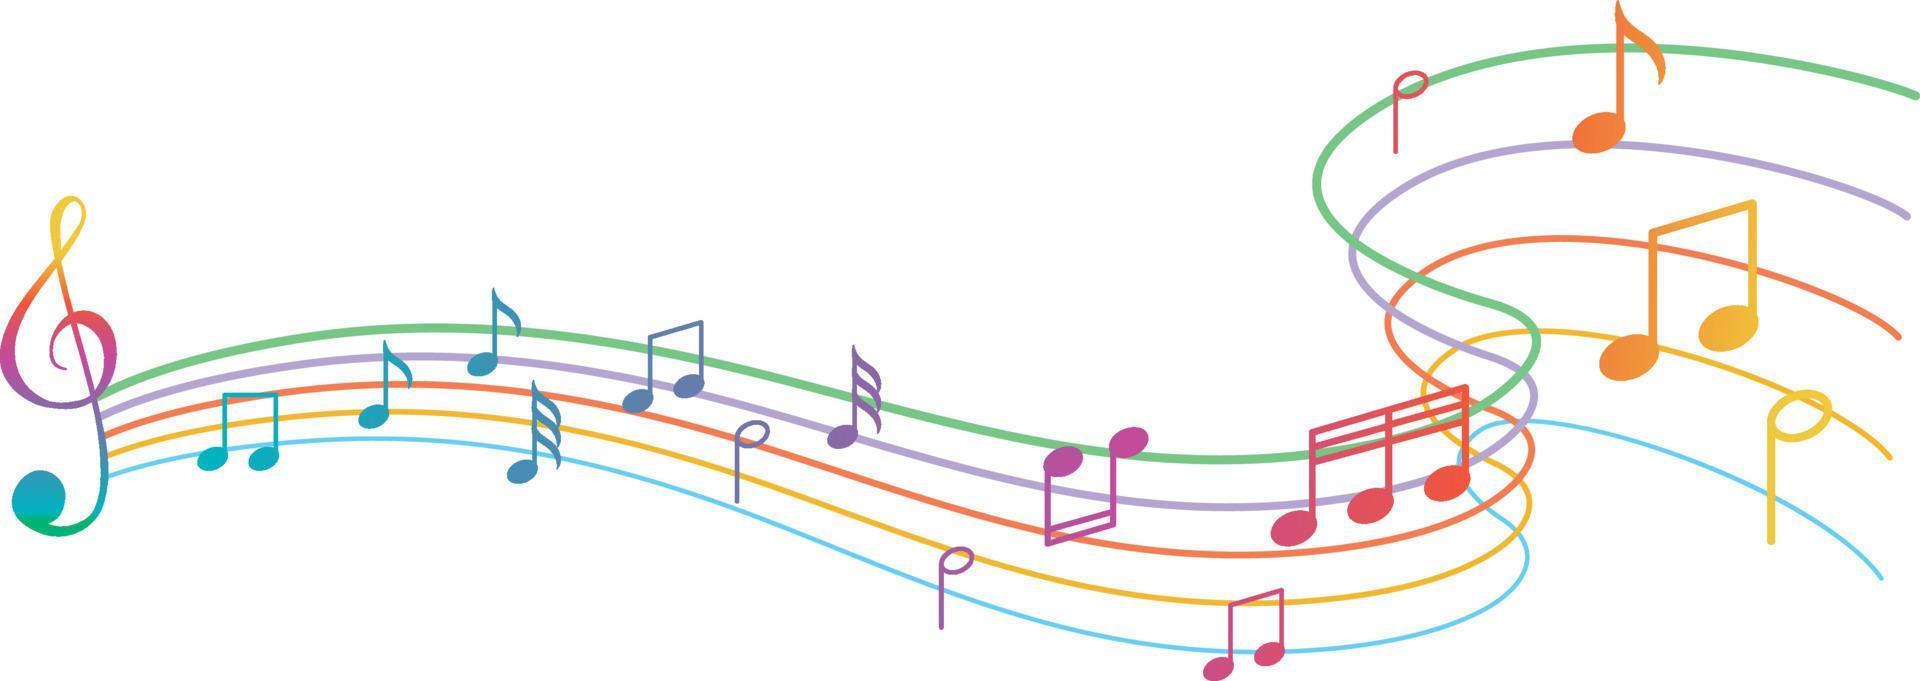 a música nota o arco-íris colorido no fundo branco vetor